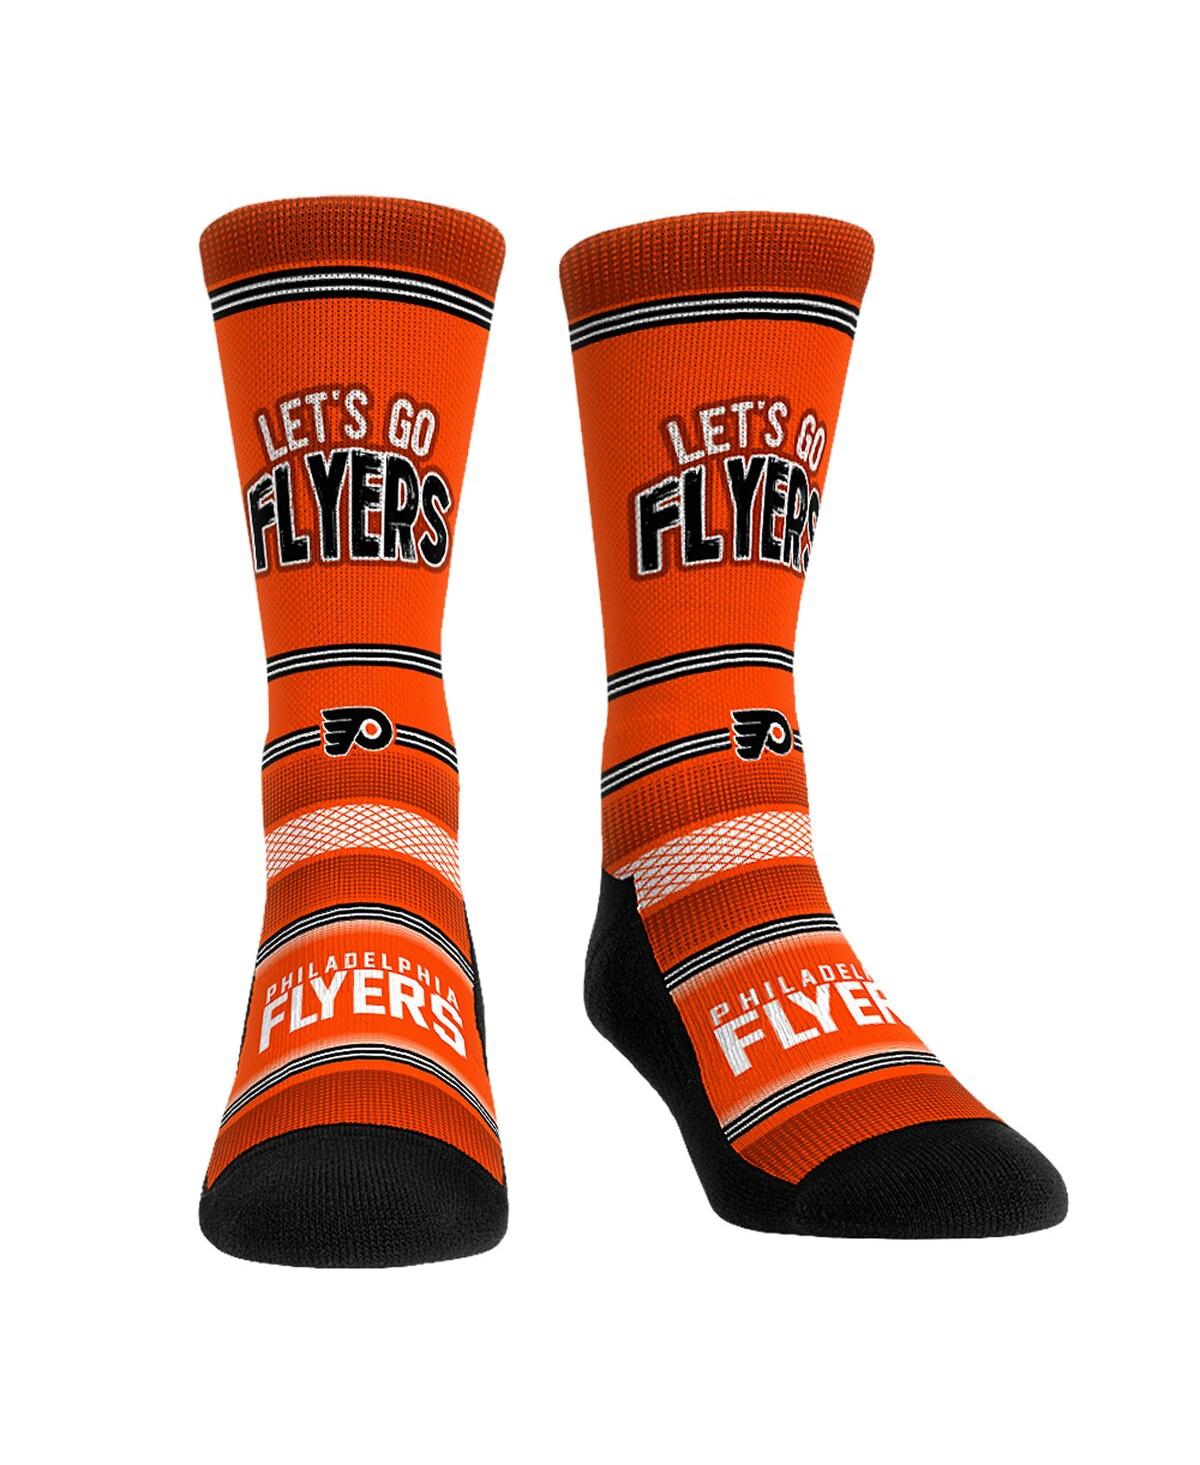 Men's and Women's Rock 'Em Socks Philadelphia Flyers Team Slogan Crew Socks - Orange